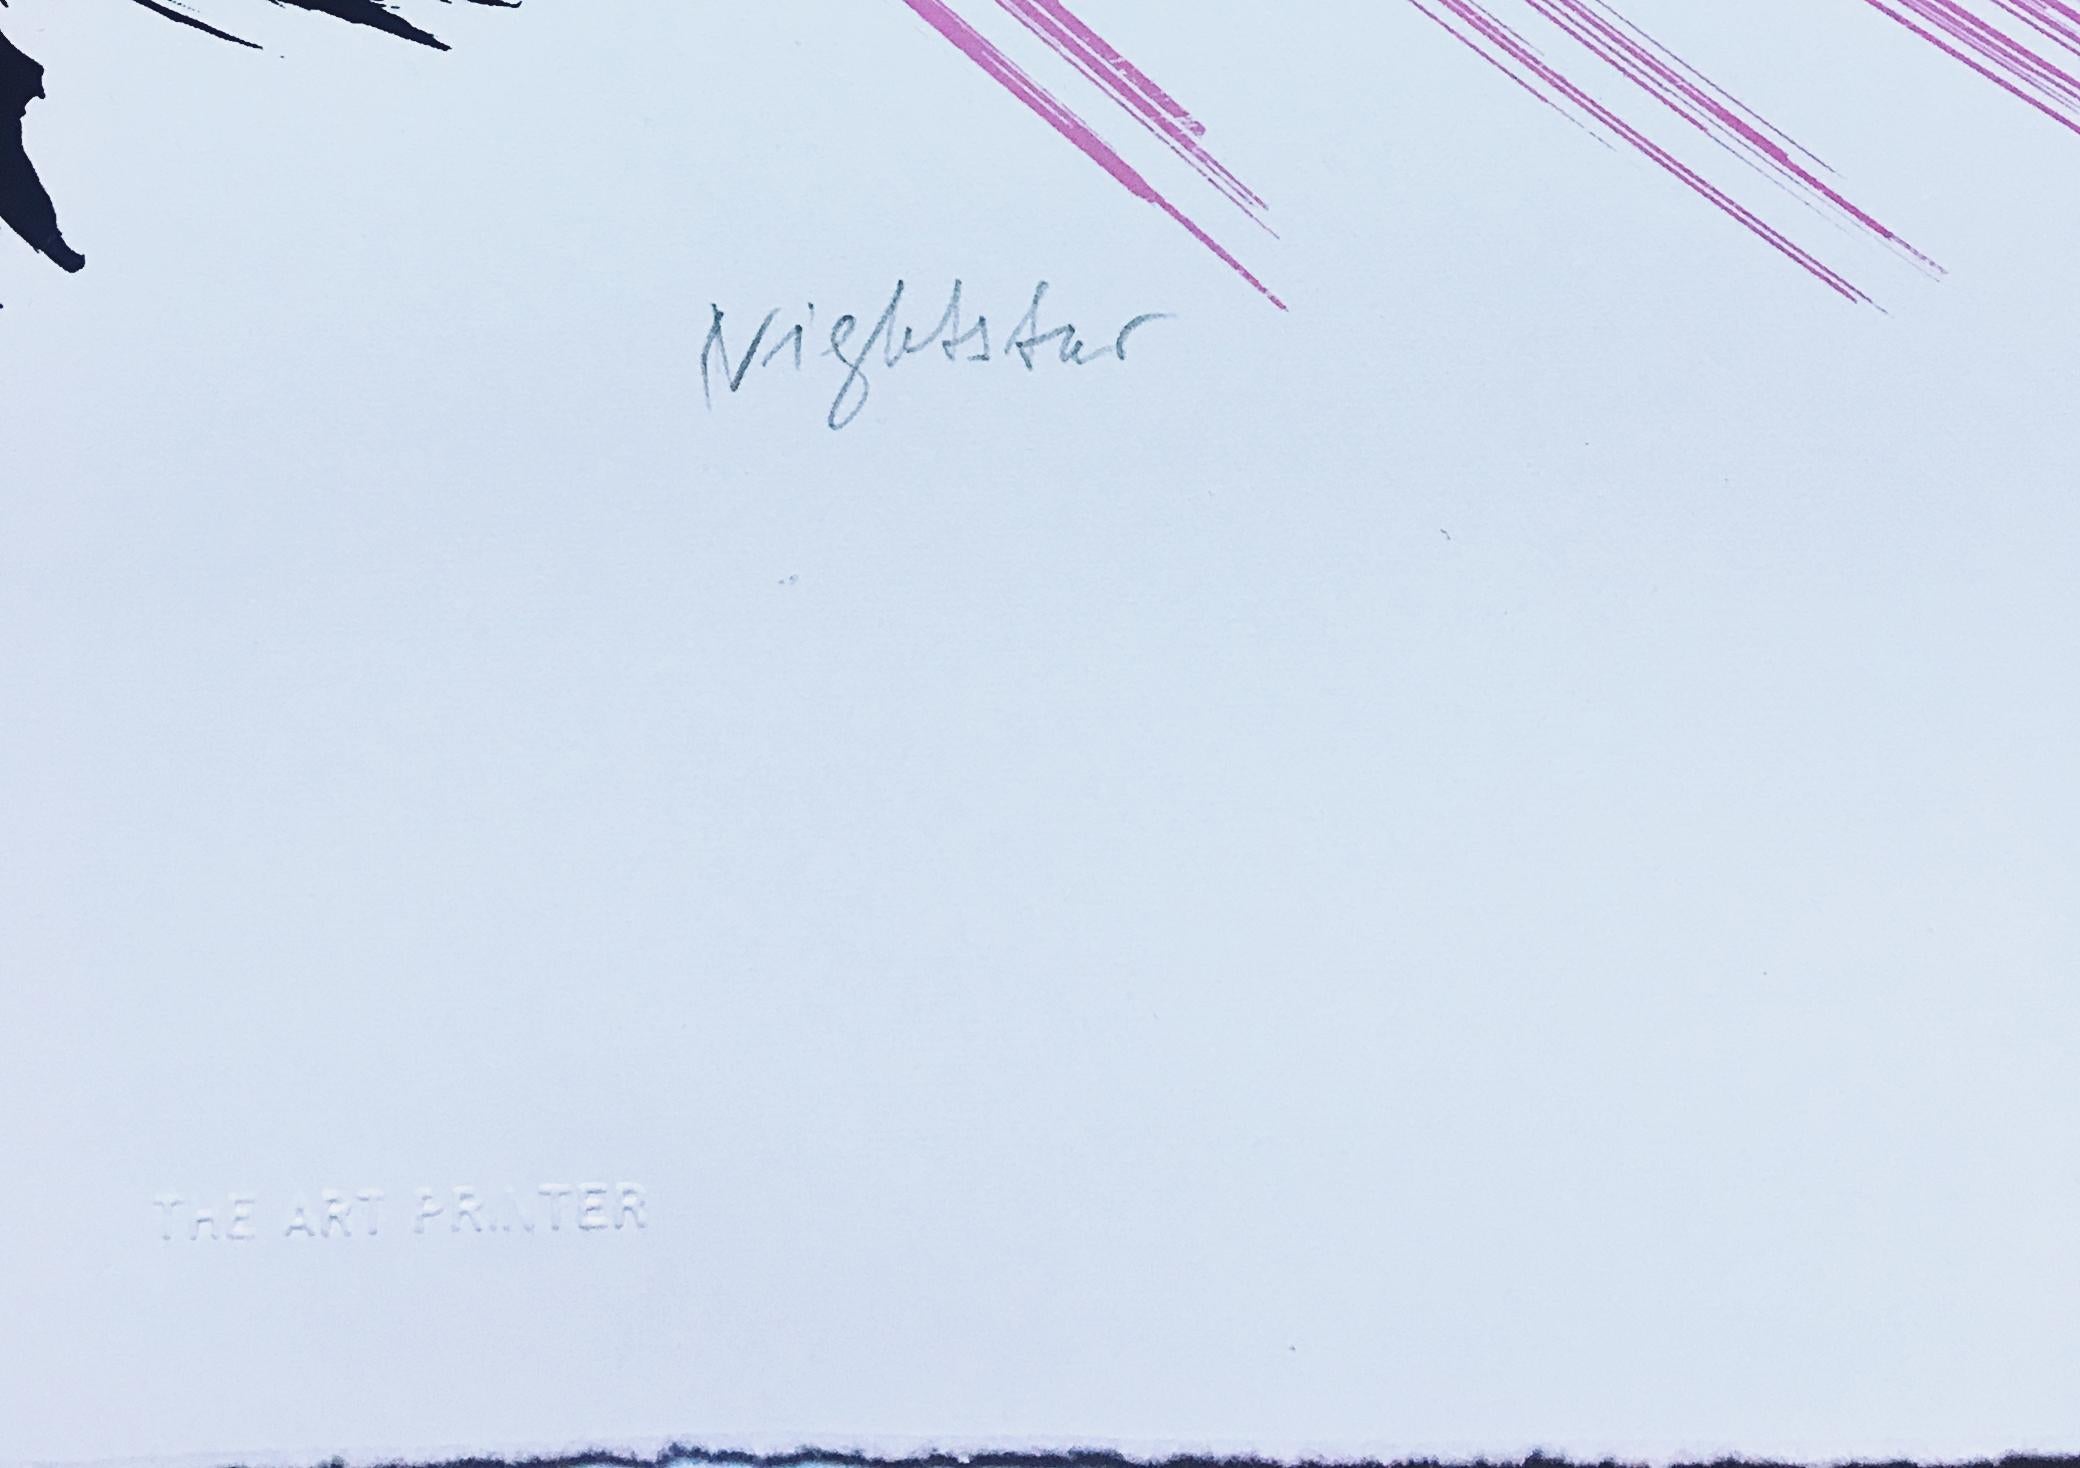 Friedel Dzubas
Étoile de nuit, 1984
Sérigraphie sur papier vélin avec des bords lustrés
Signé au crayon et numéroté 24/90 au recto
32 3/10 × 19 1/10 pouces
Non encadré
Magnifique sérigraphie de l'artiste renommé Friedel Dzubas. Signé à la main et